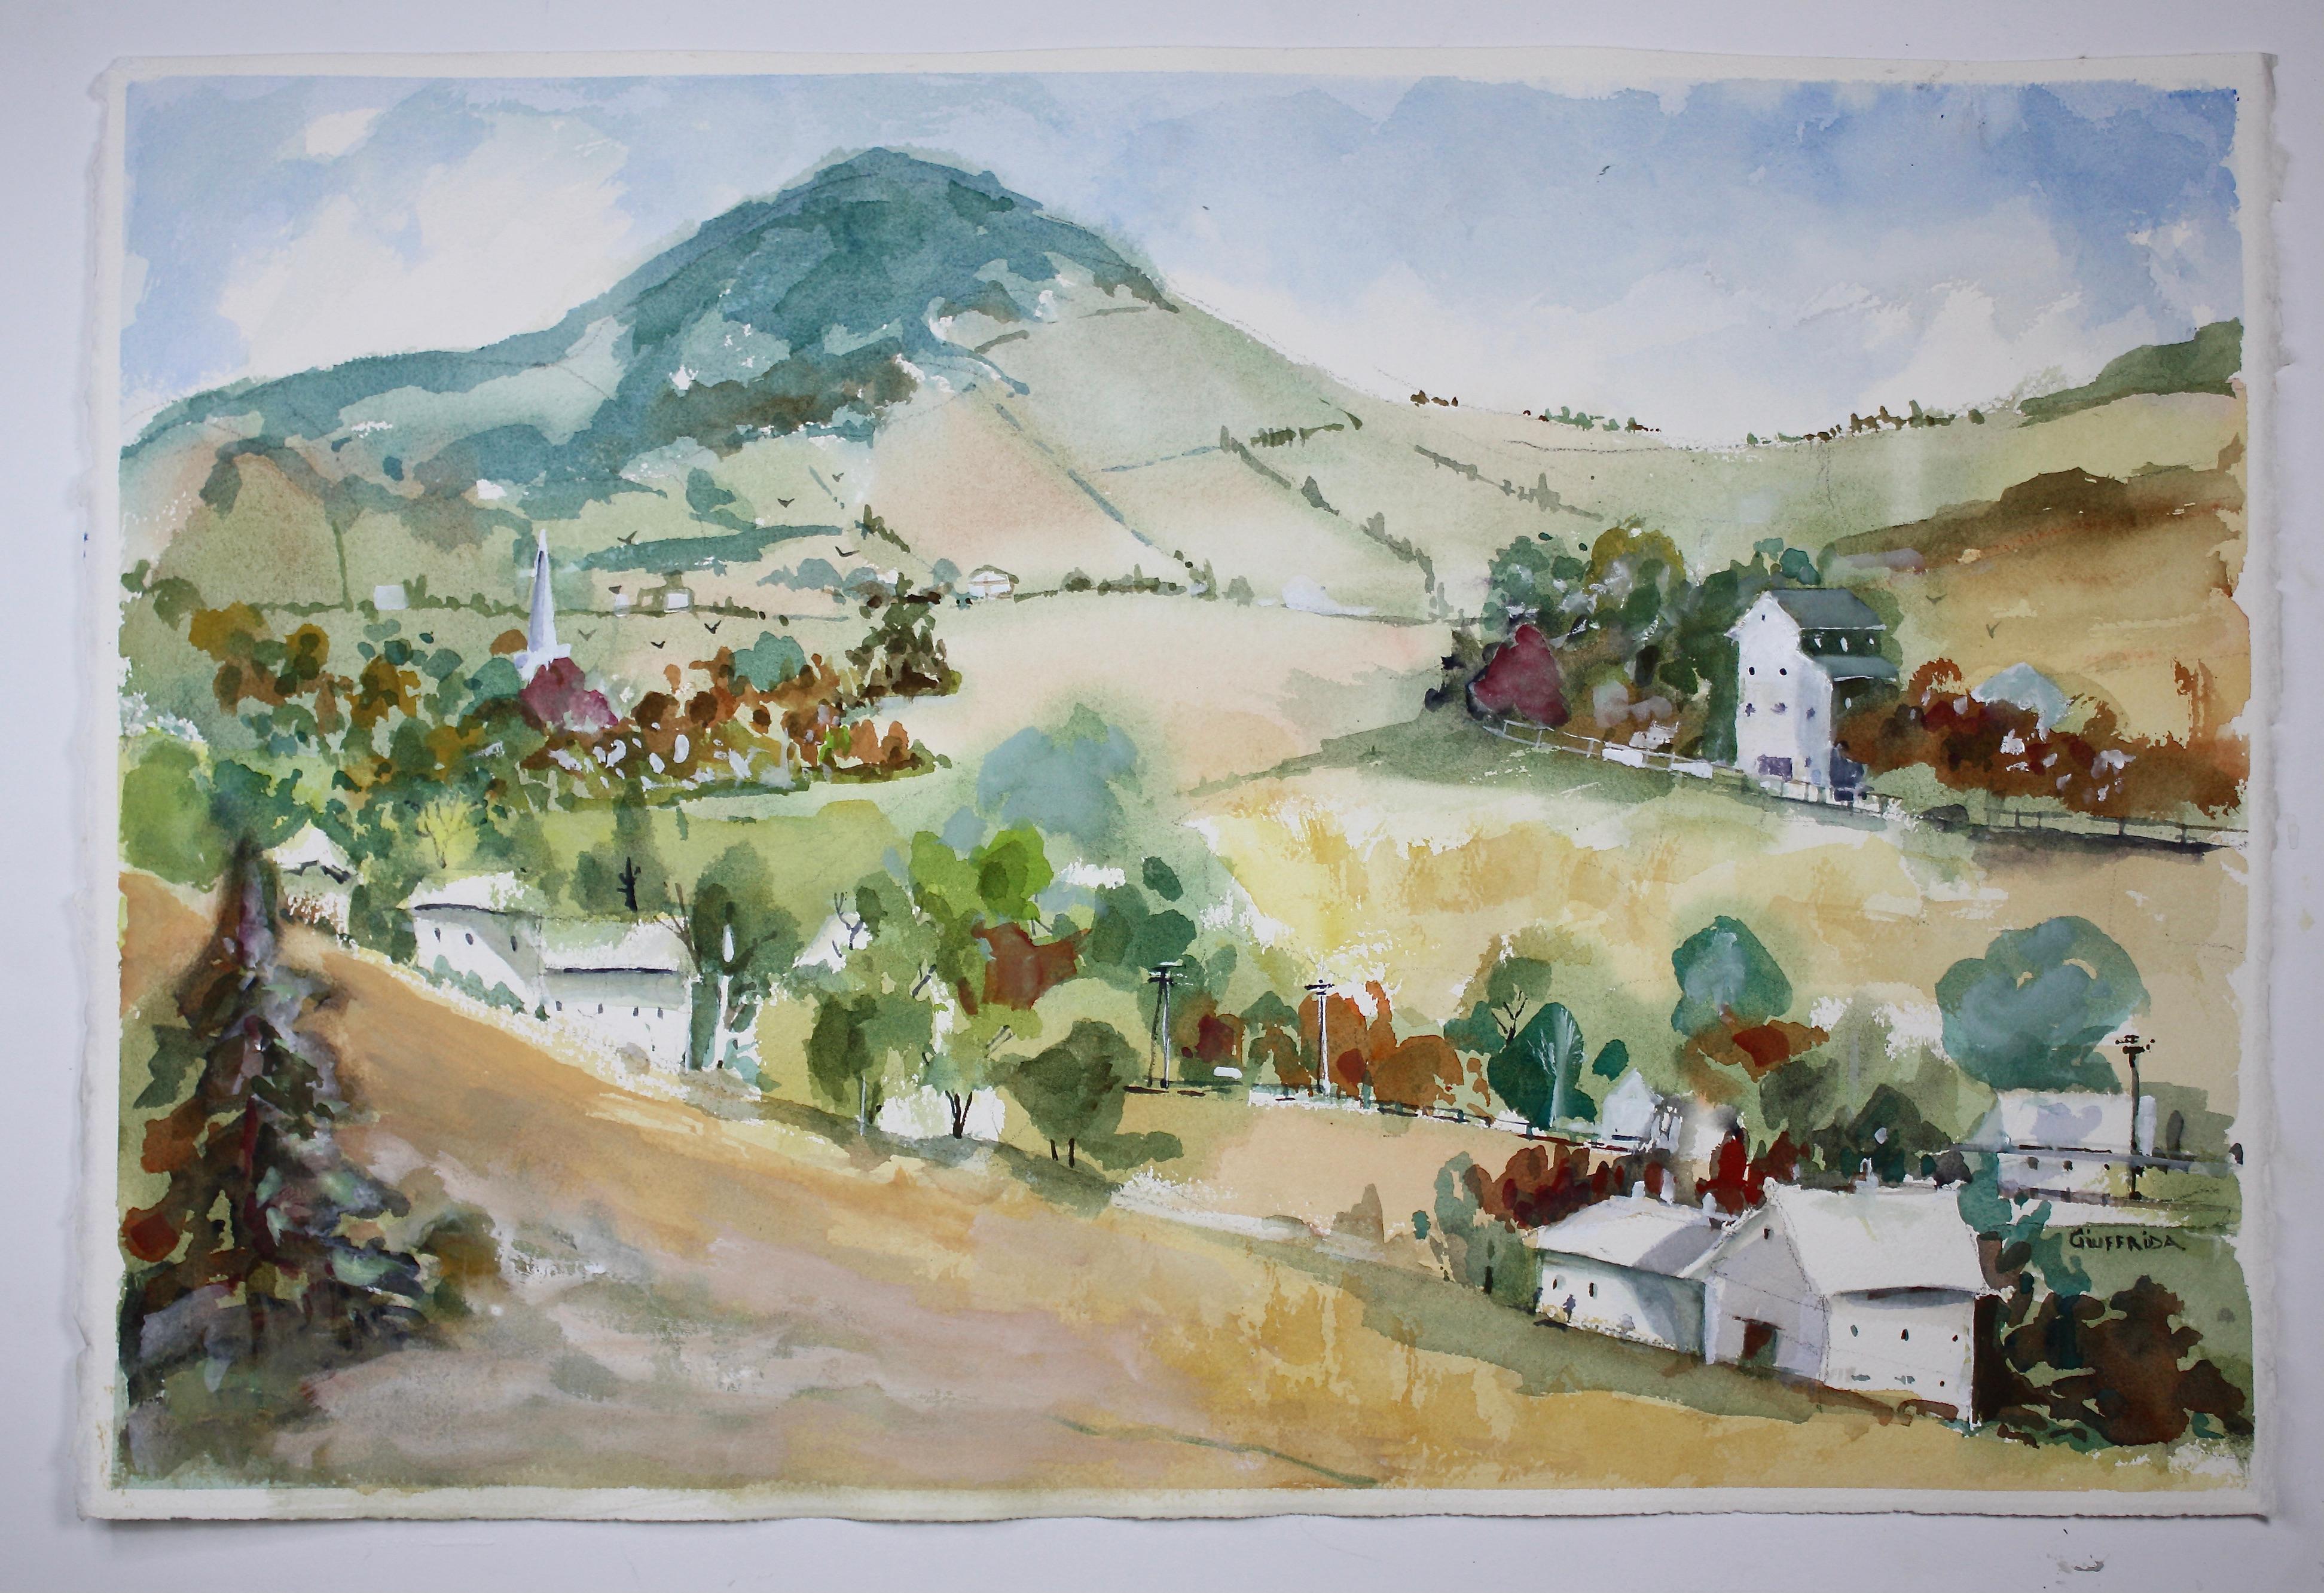 <p>Kommentare des Künstlers<br>In dem impressionistischen Werk des Künstlers Joe Giuffrida erstreckt sich ein charmantes Bergdorf in Frankreich über herrliche Hügel. Die Häuser in der hügeligen Gemeinde bieten einen großartigen Panoramablick. Er